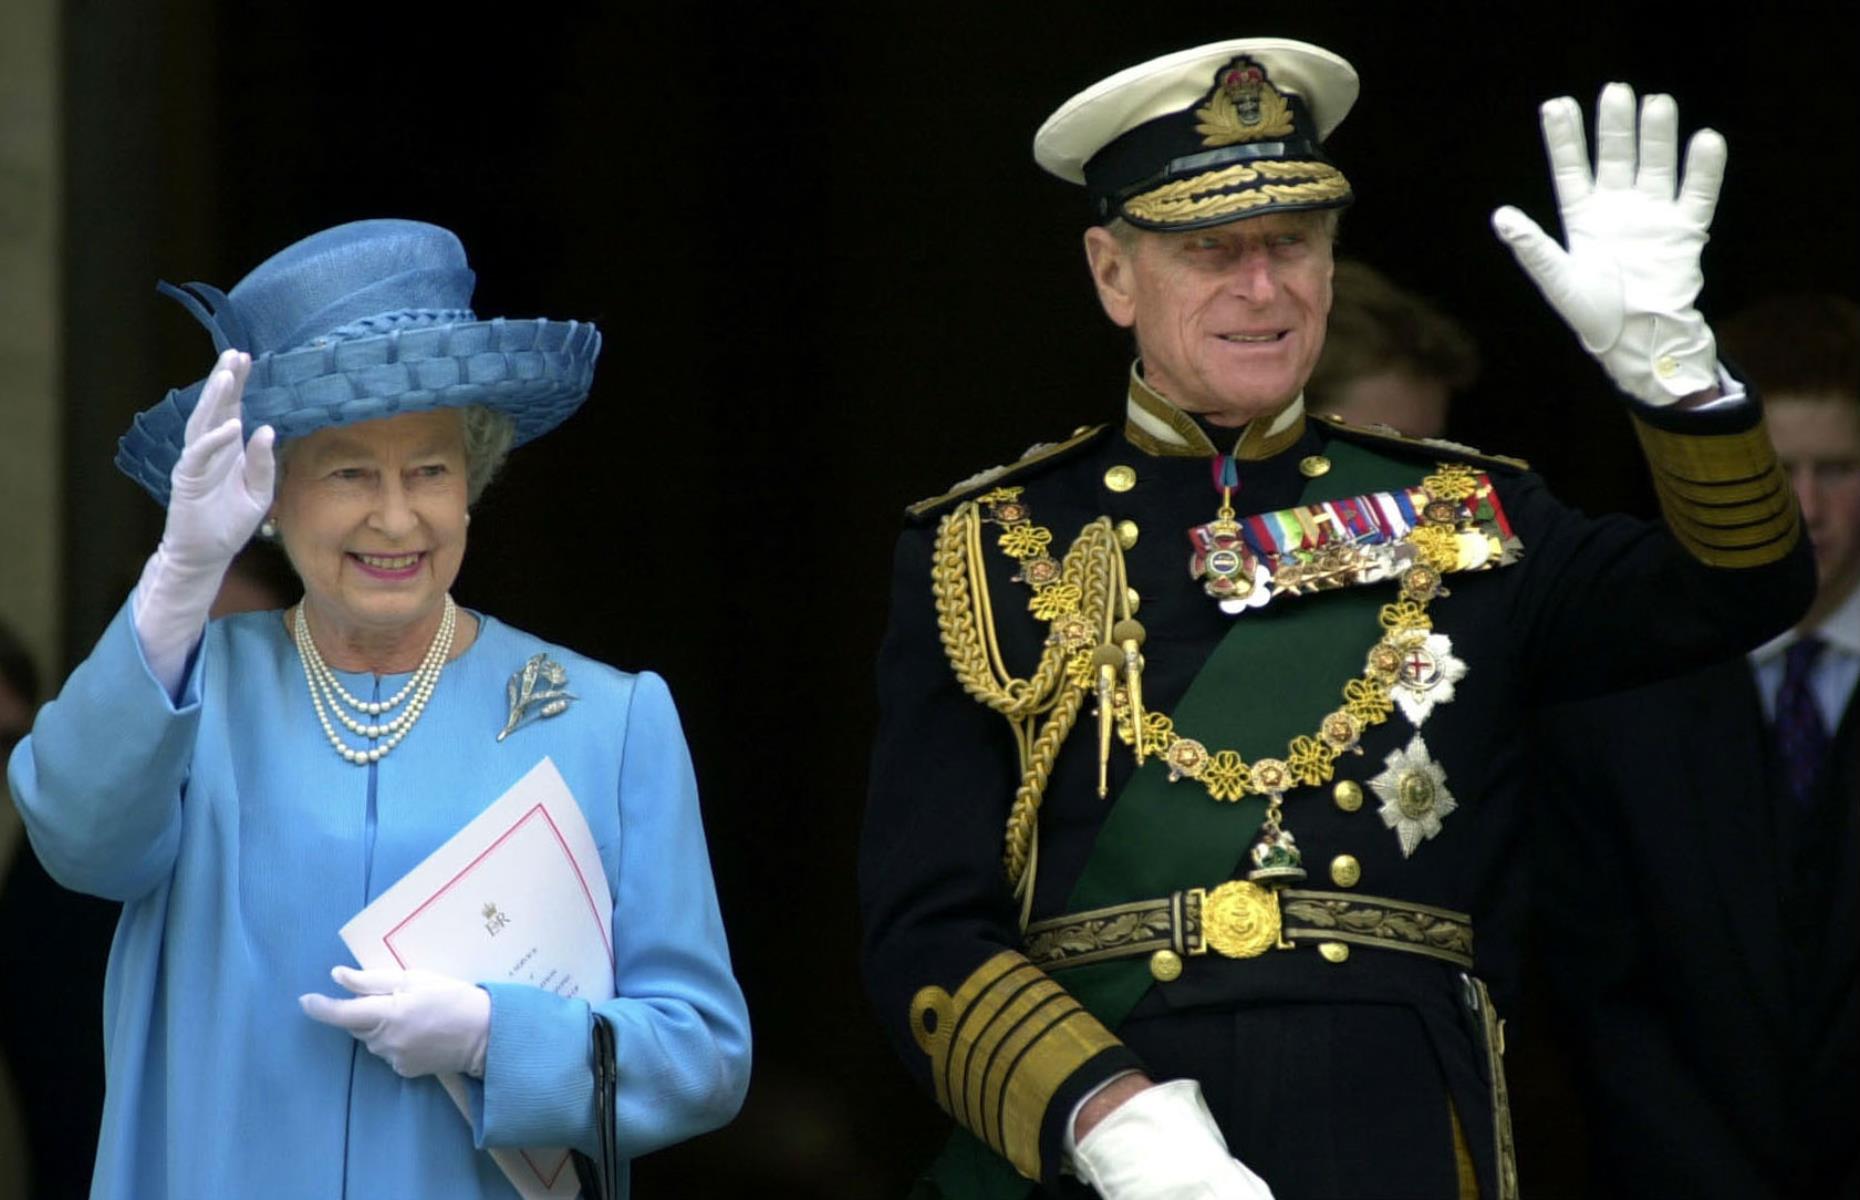 2002: The Queen celebrates her Golden Jubilee